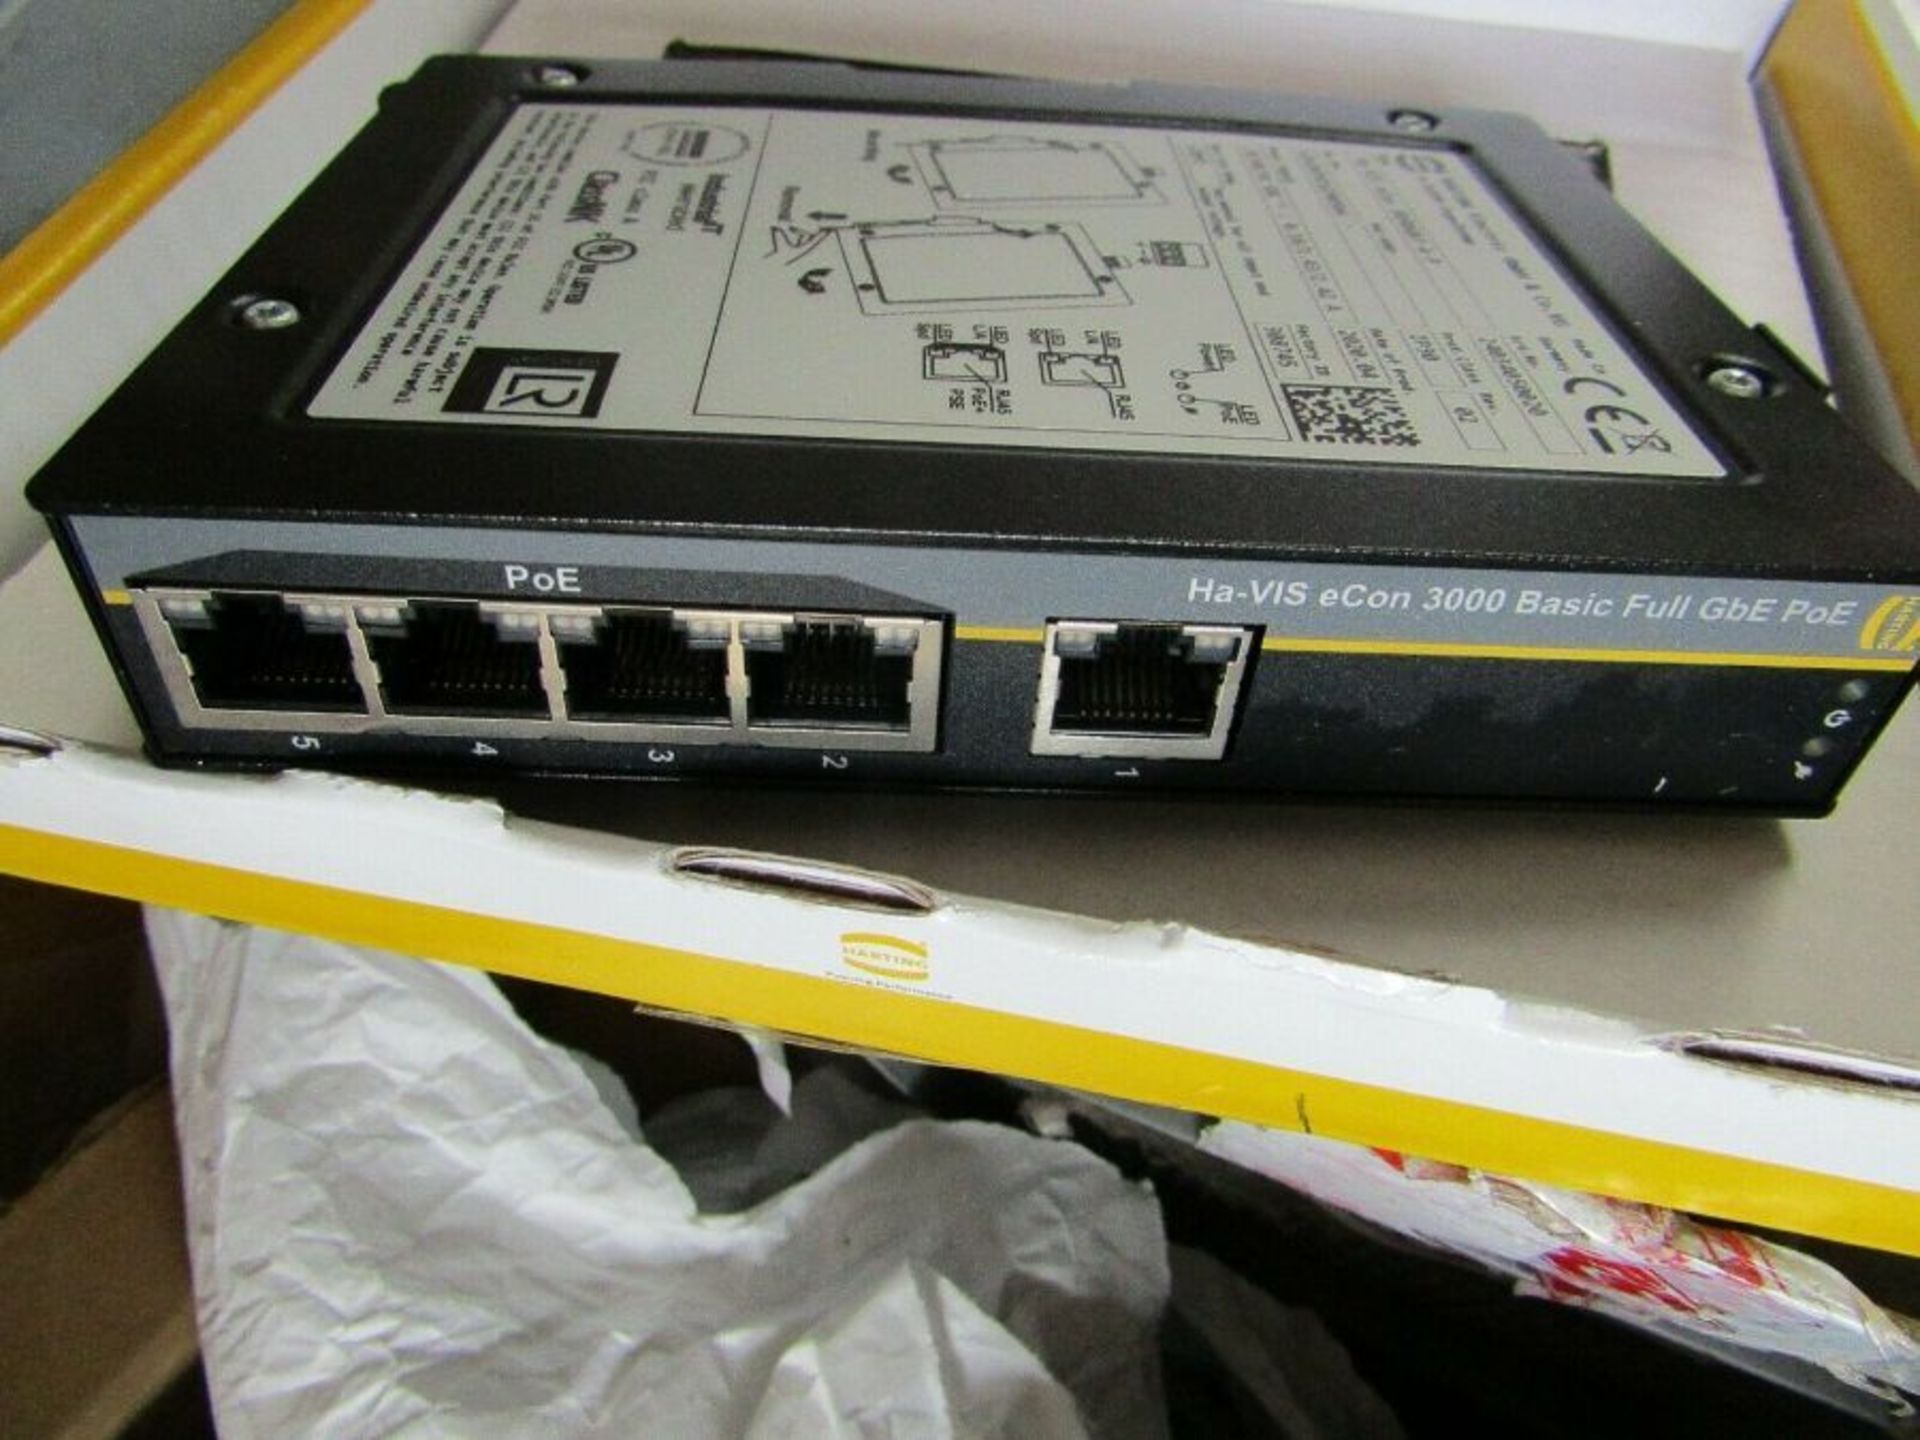 Harting Gigabit Ethernet Switch, RJ45 5 port 54Vdc Din Rail - Head 3008128894 - Image 6 of 8